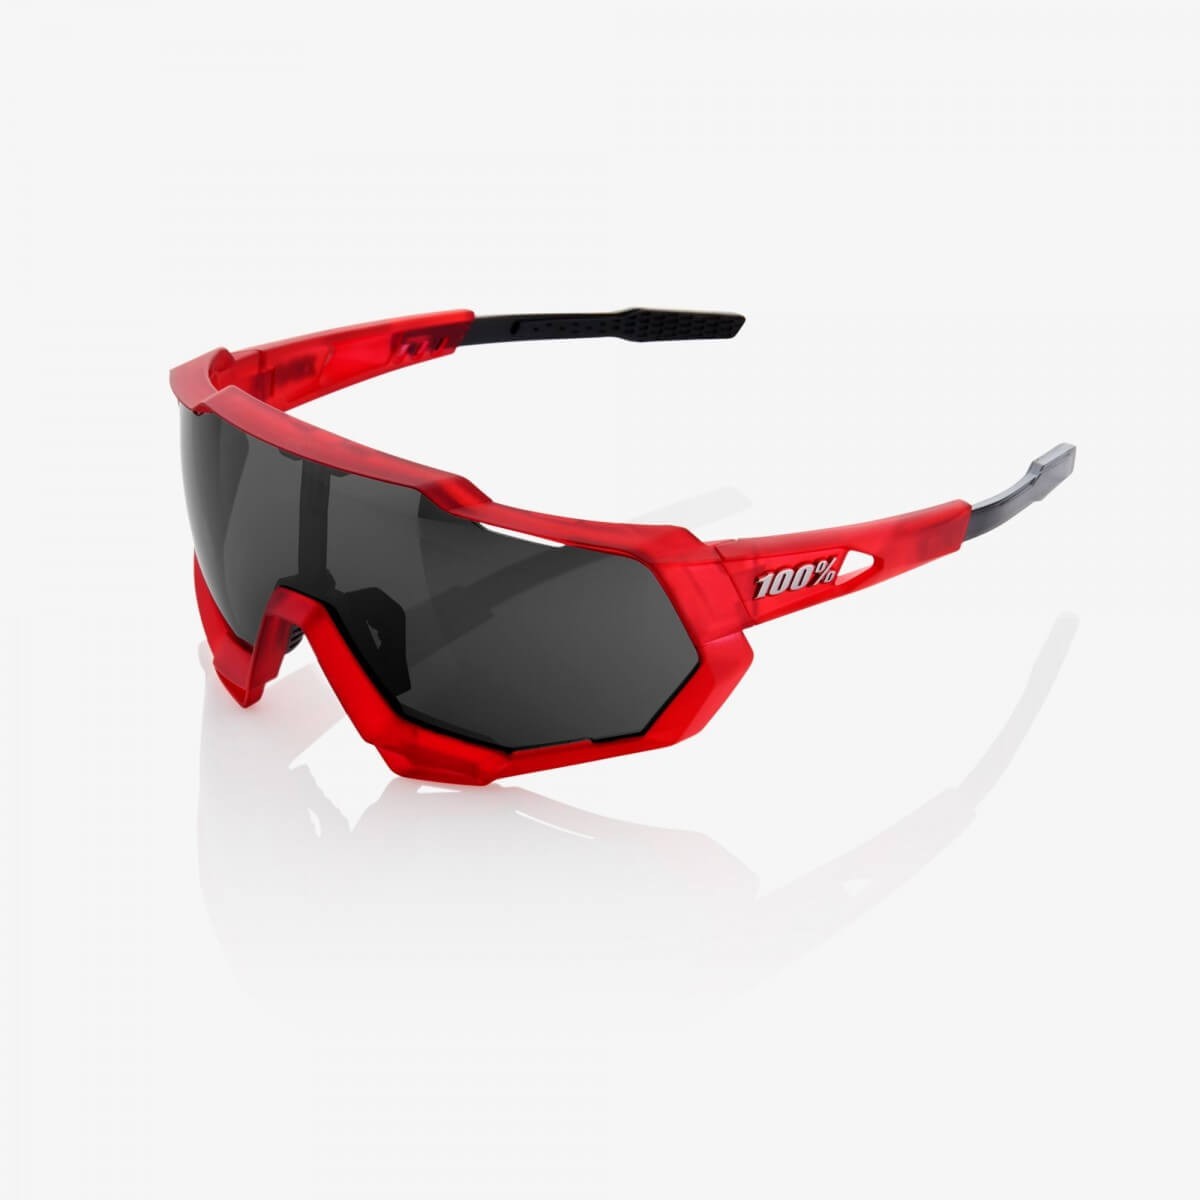 Gafas 100% Speedtrap matte rojo y negro con lente espejo negra